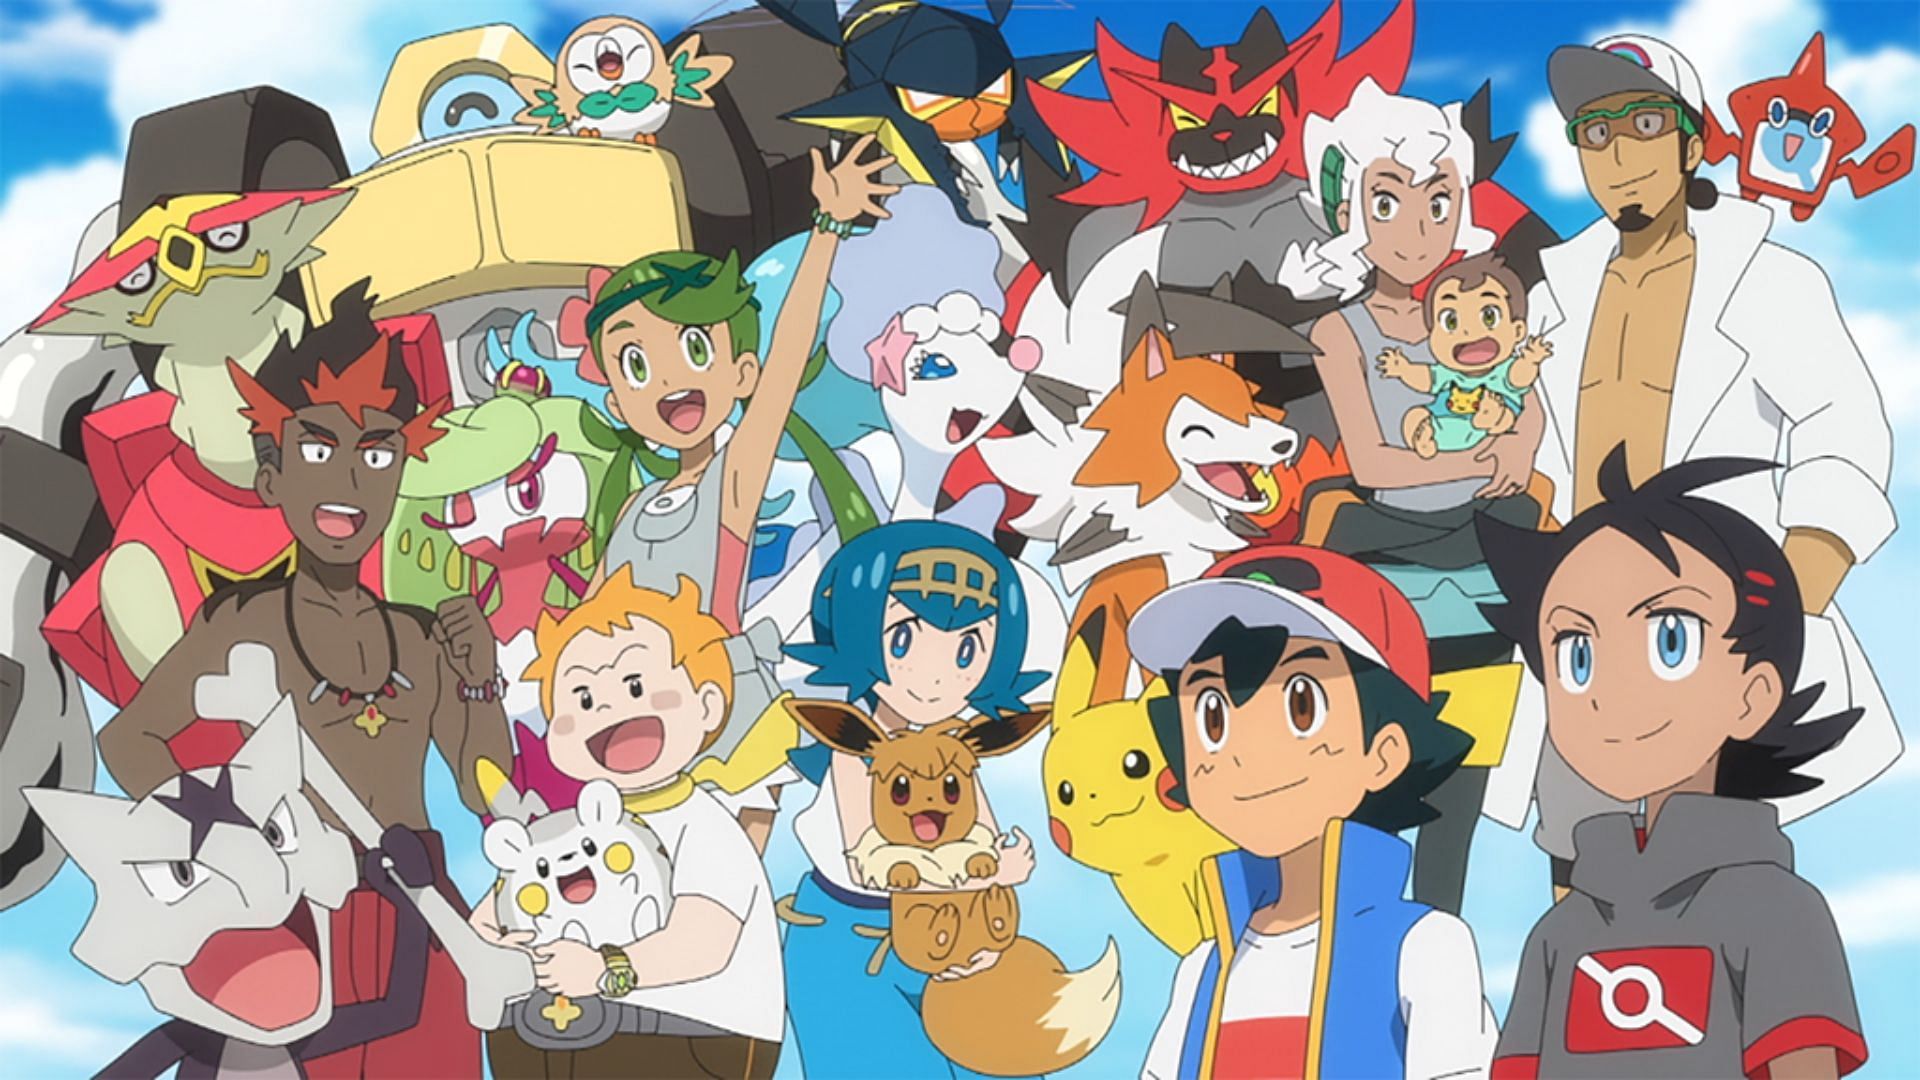 Pokemon Journeys Episode List: Full list of all episodes so far